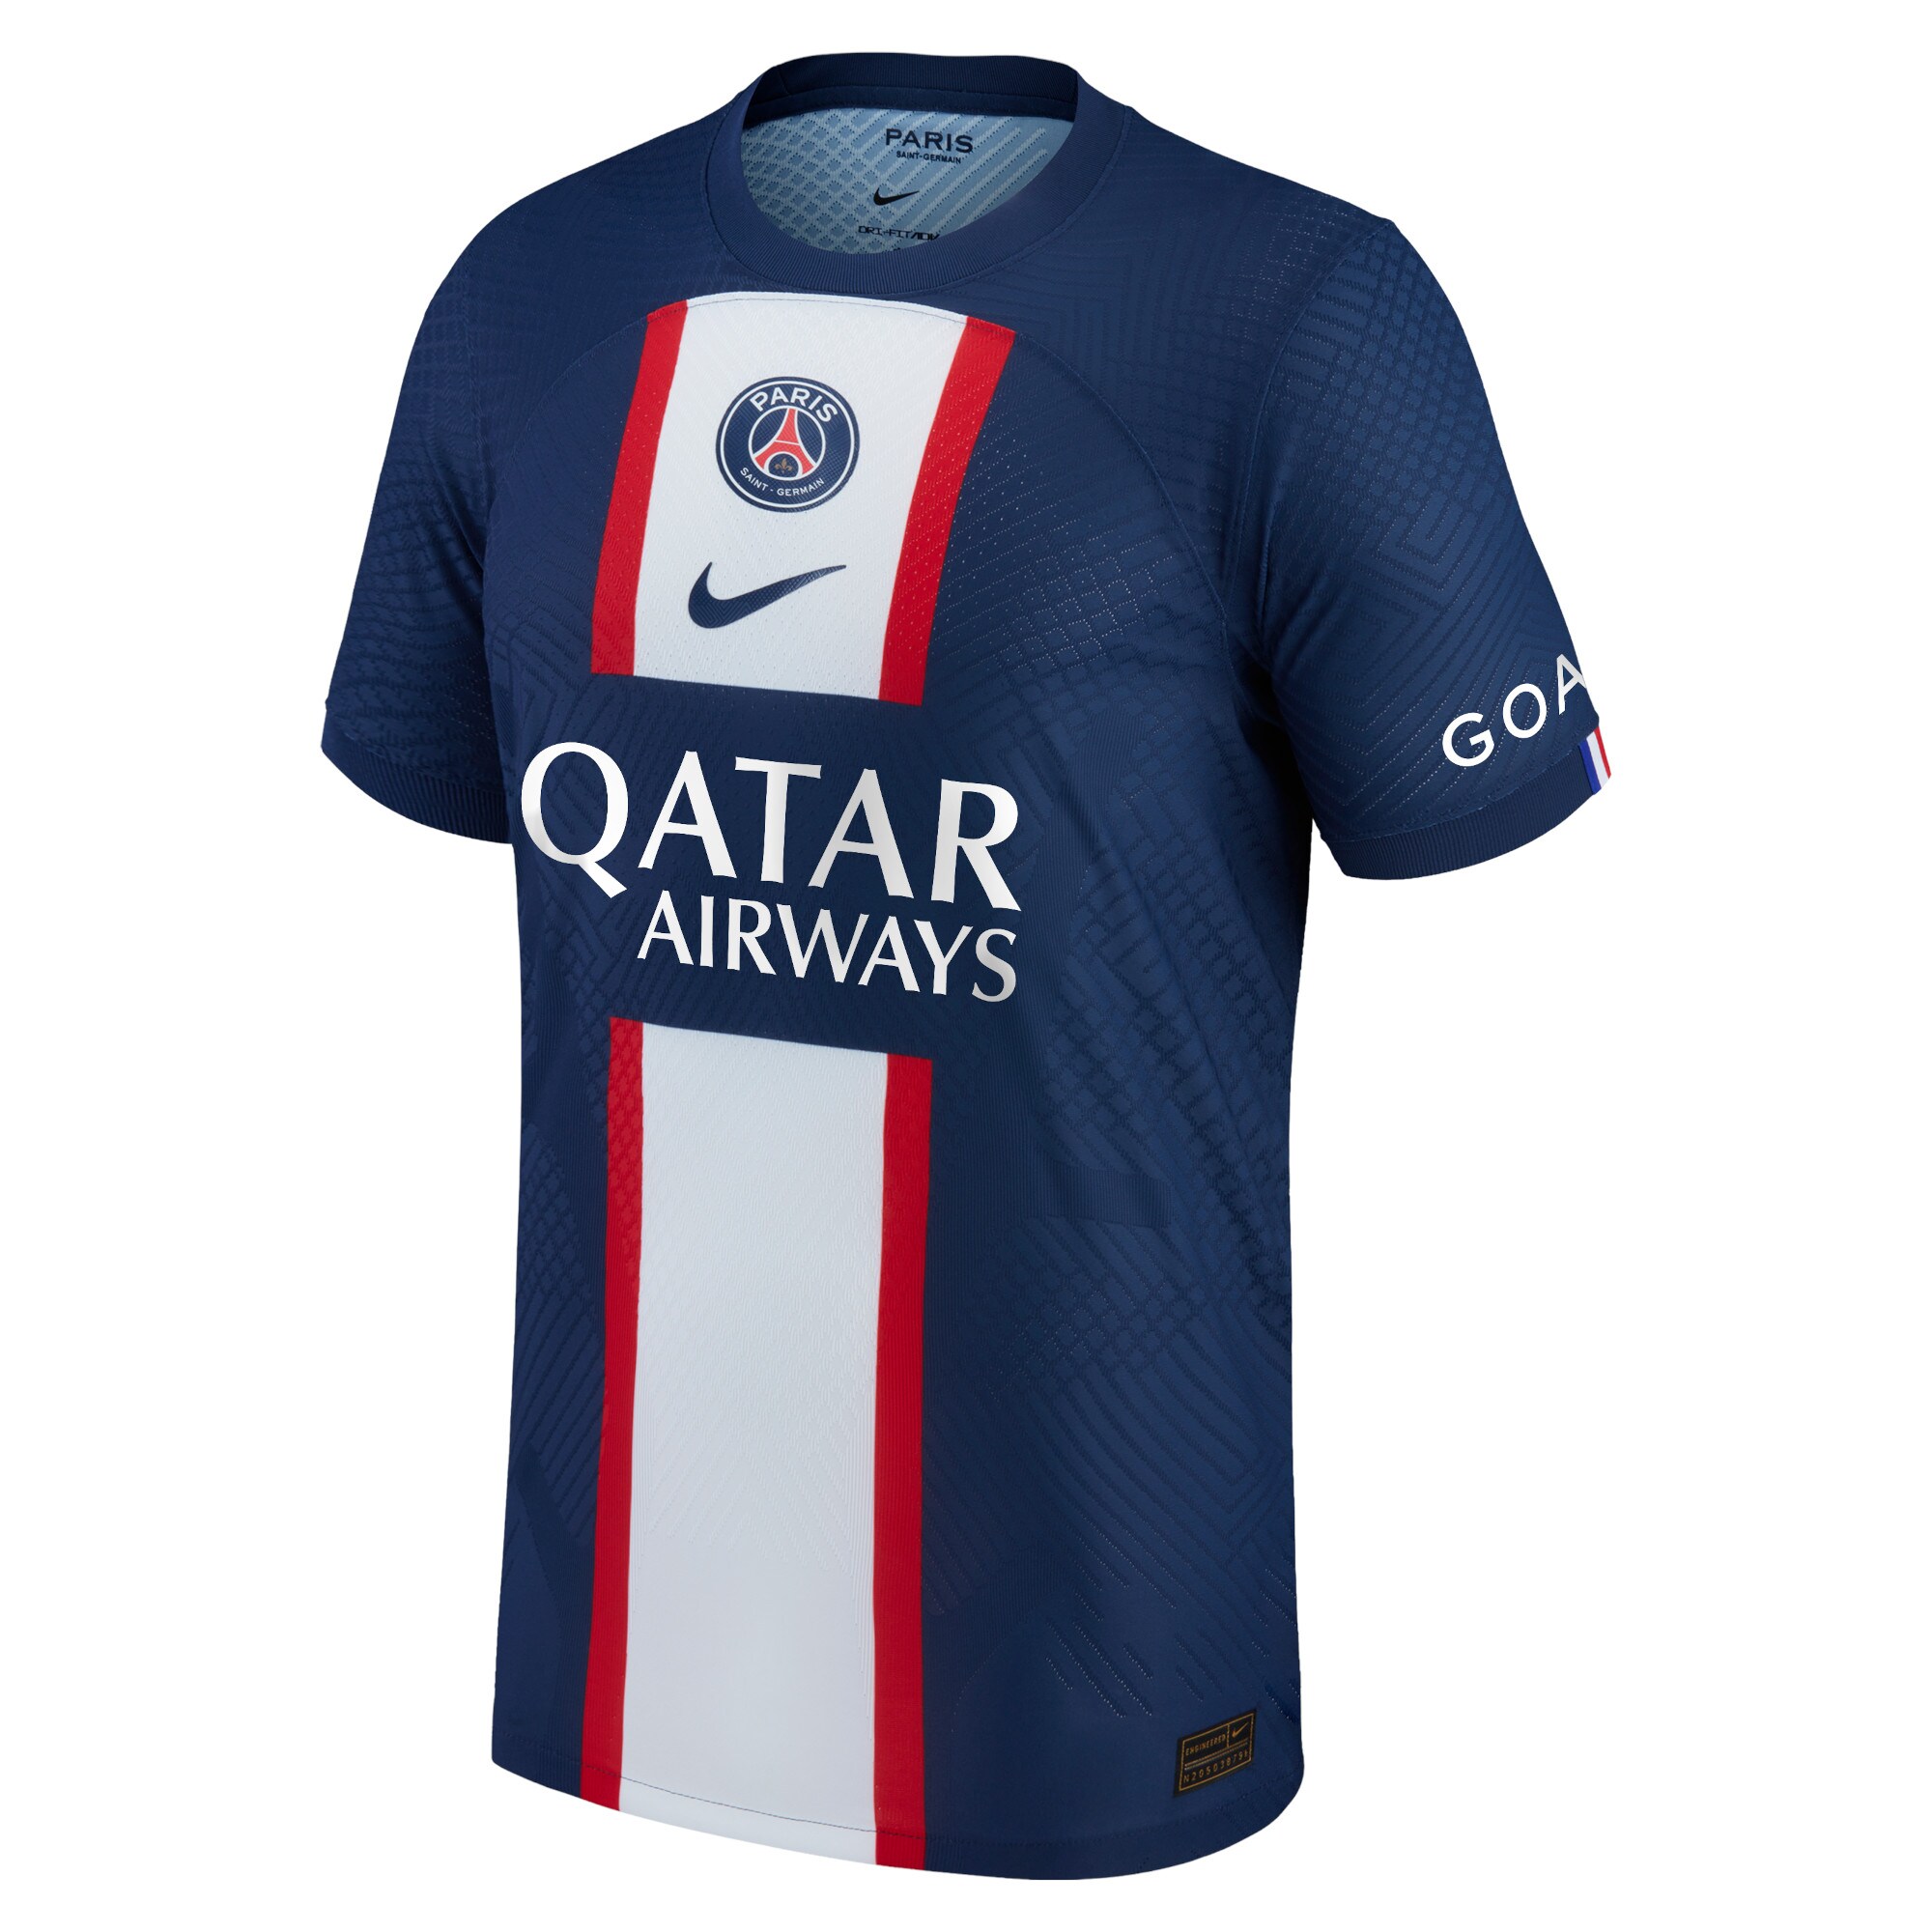 Paris Saint-Germain Home Vapor Match Shirt 2022-23 with Gana 27 printing